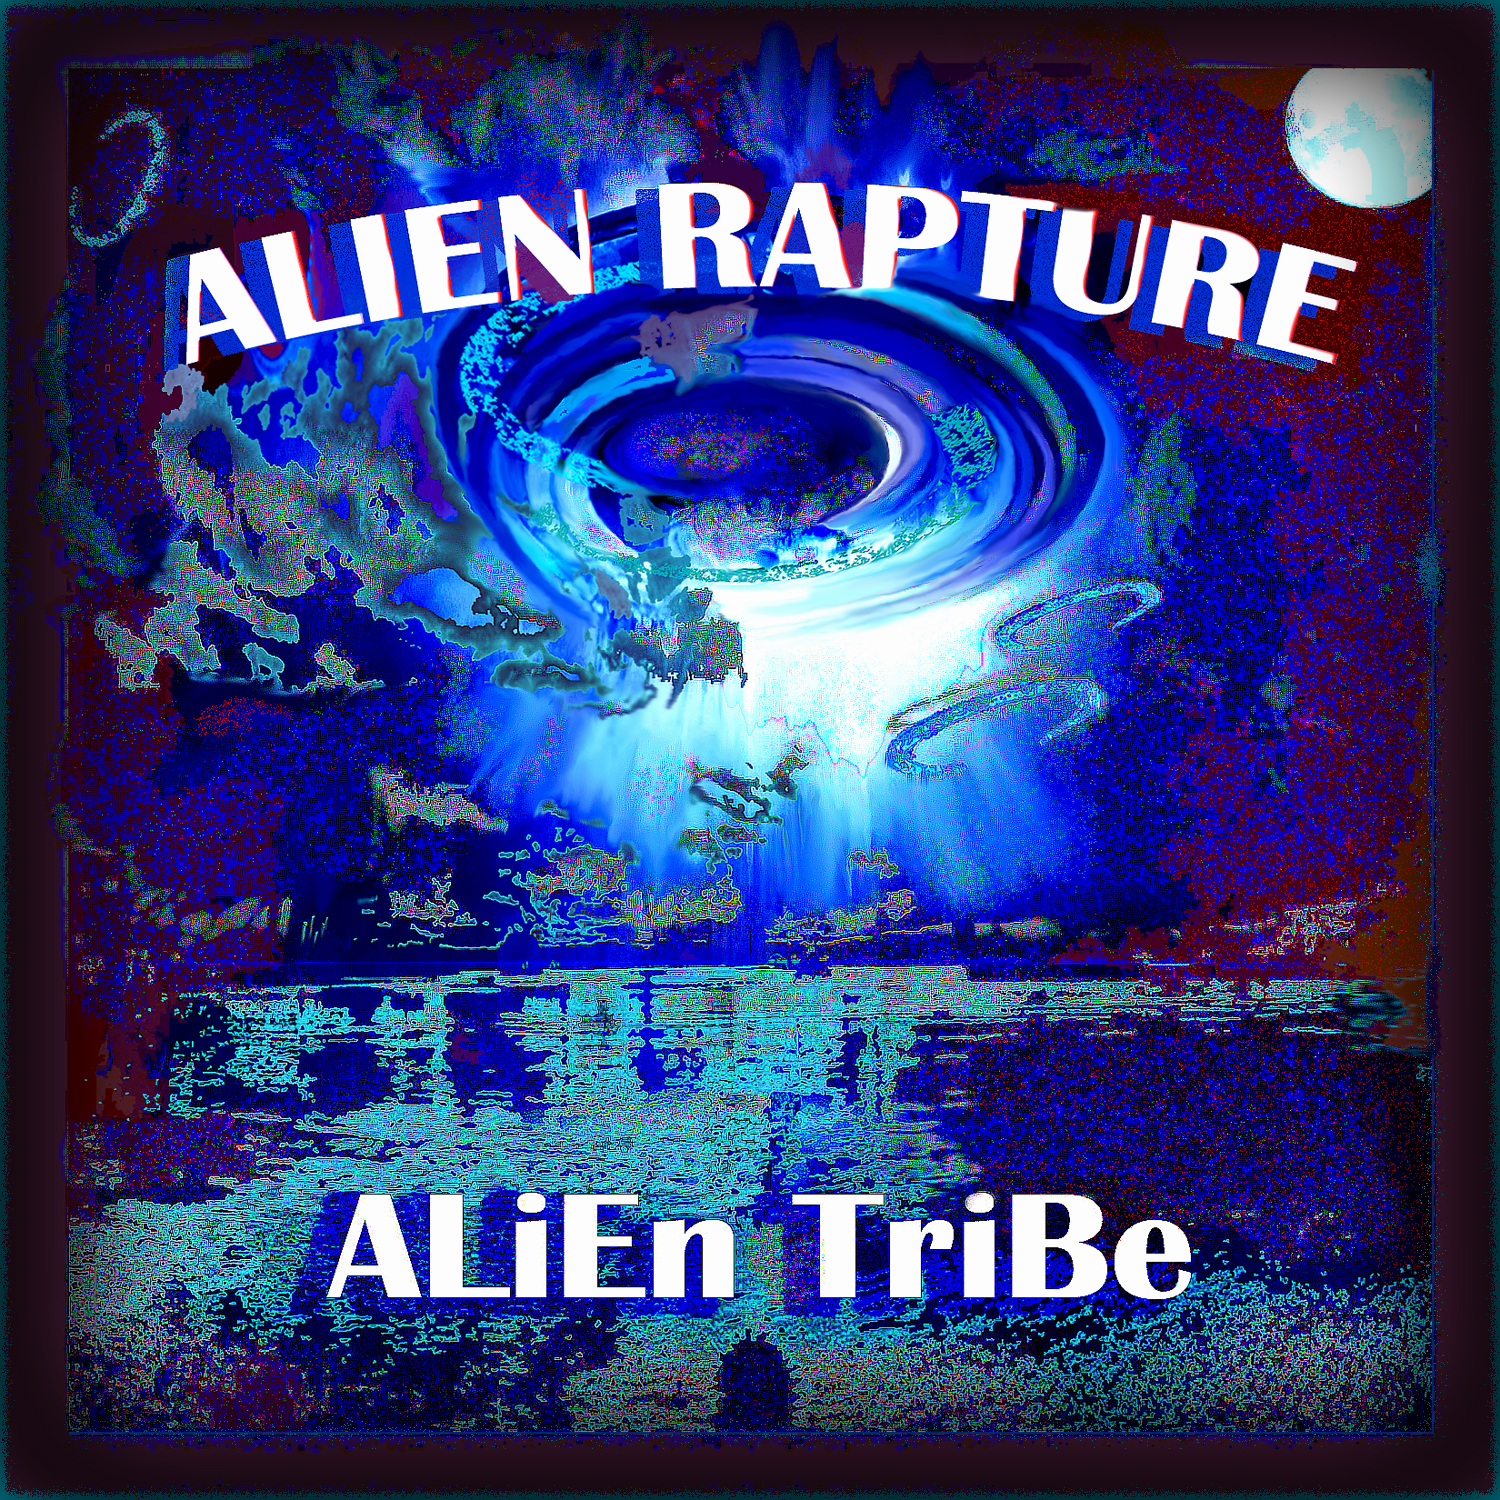 Alien Rapture by Alien Tribe